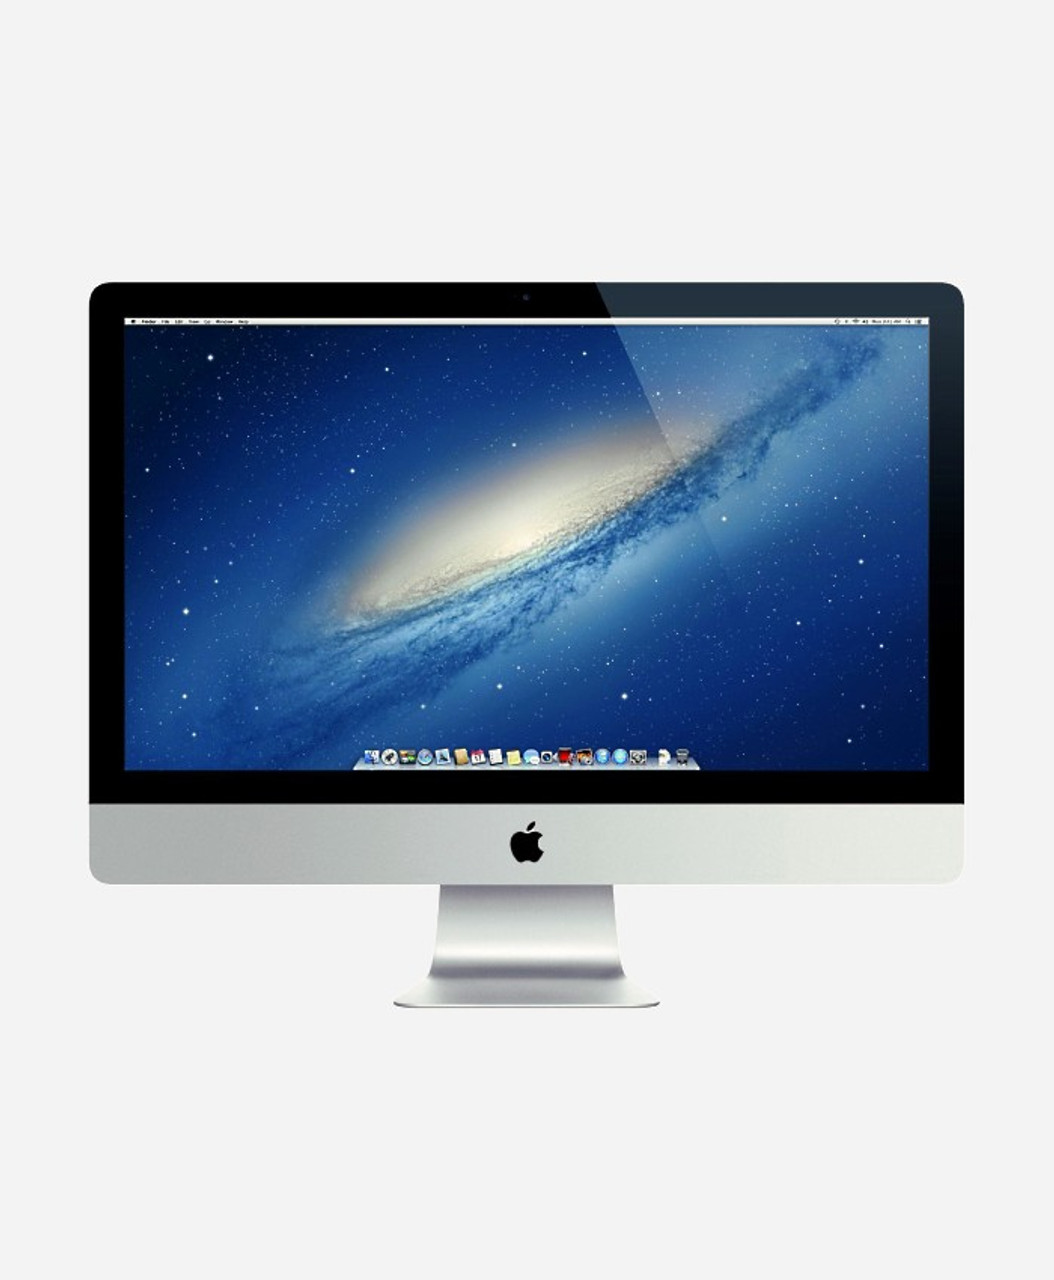 2013 mac desktop used